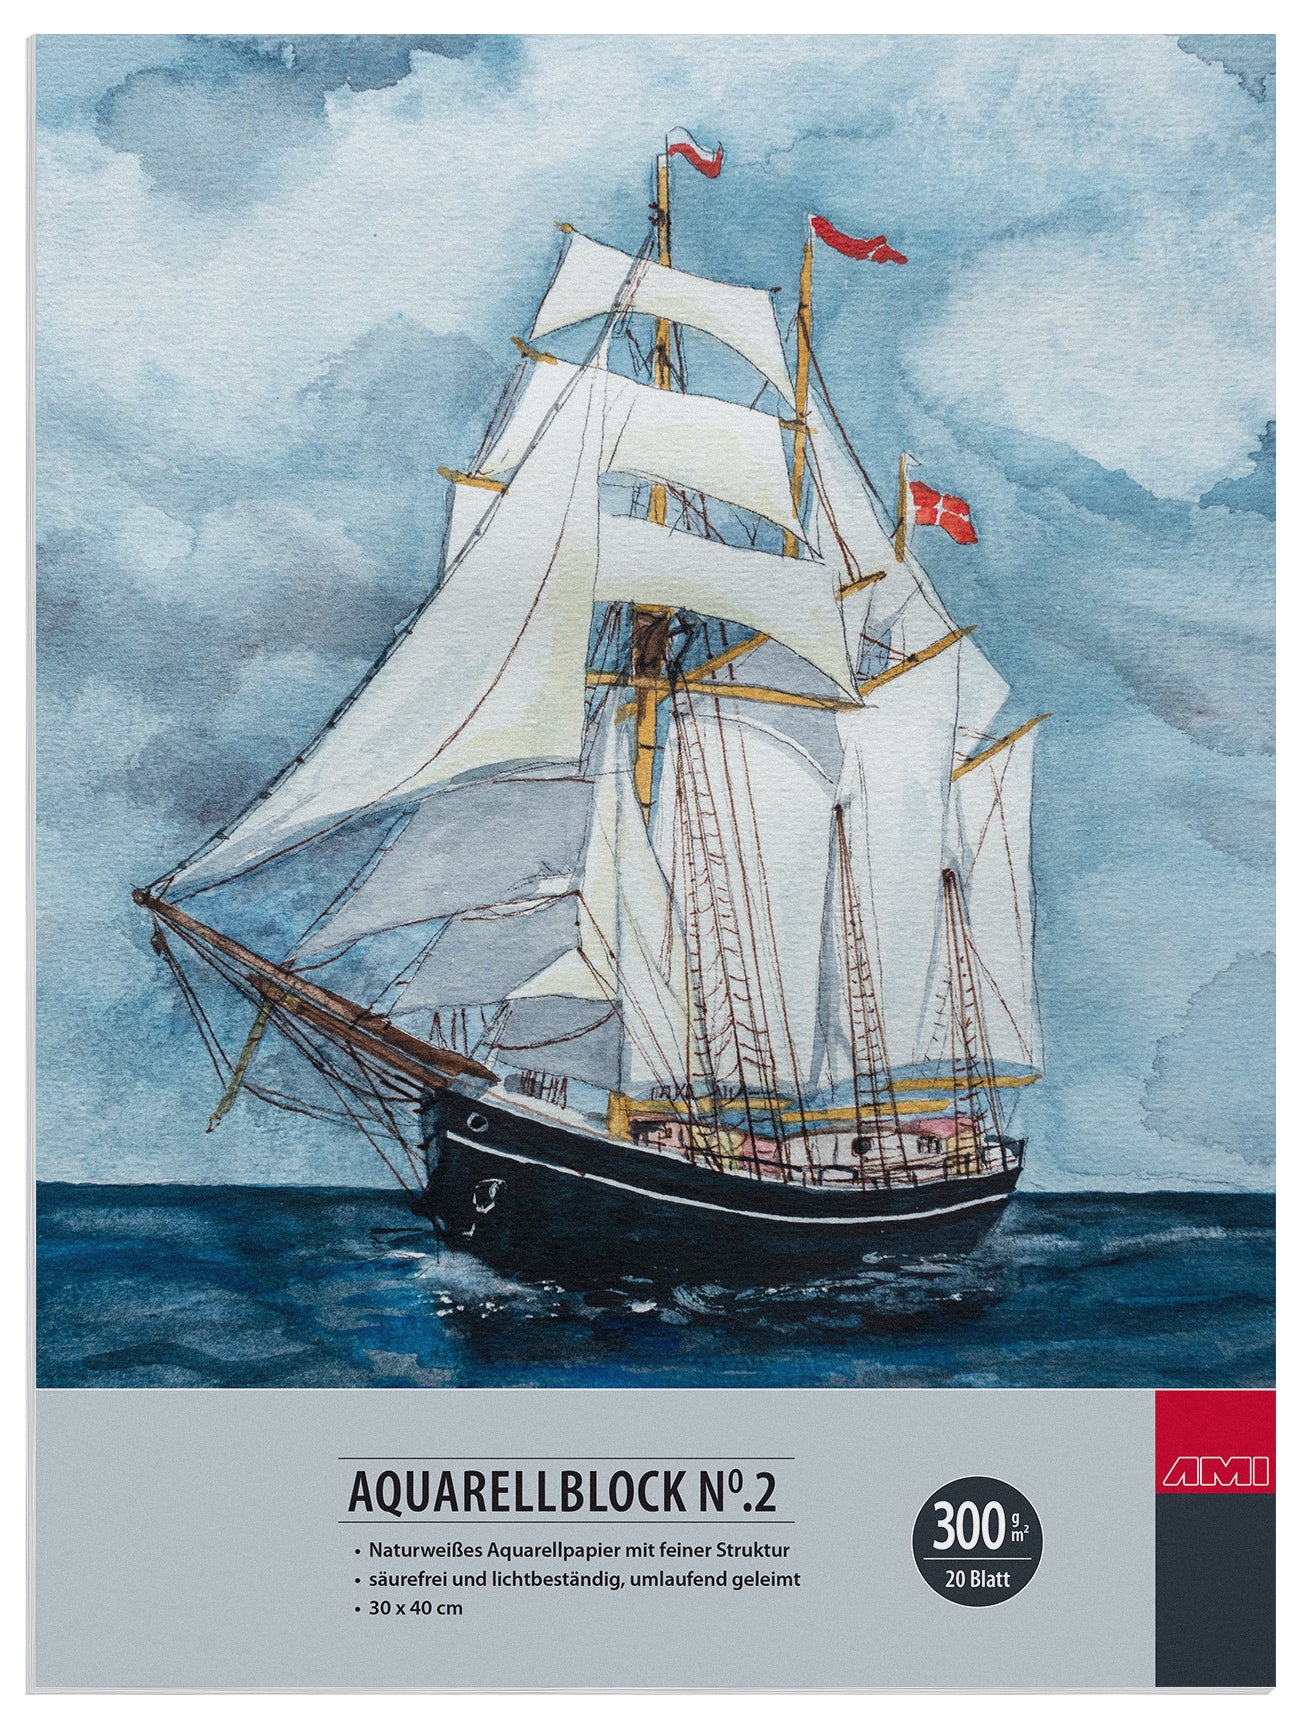 Aquarellblock No.2 300 g/m²